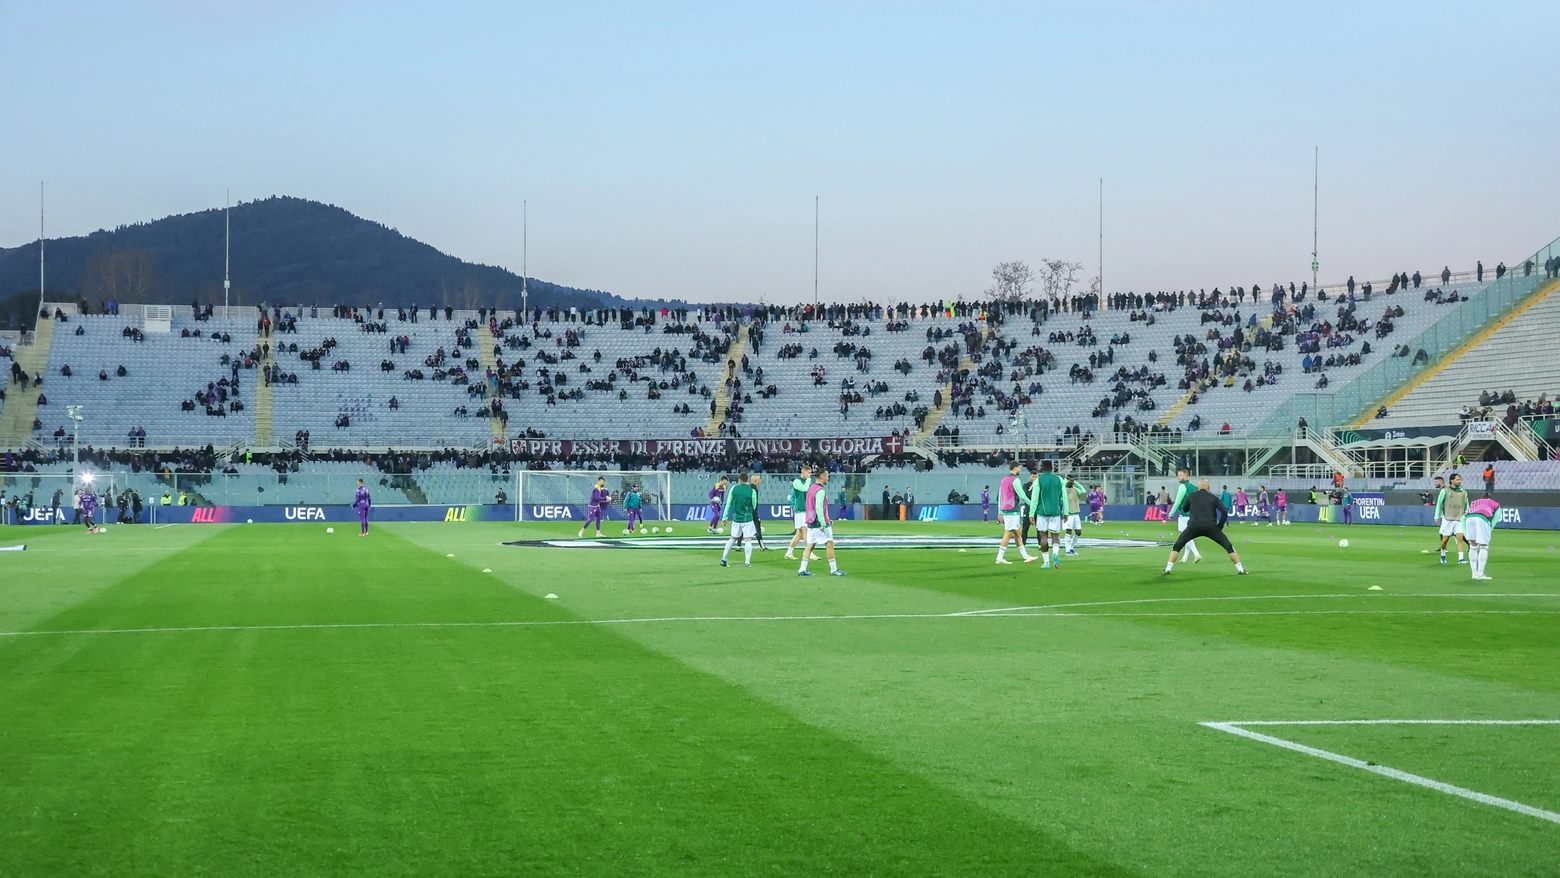 Lo stadio semi-deserto per Fiorentina-Maccabi Haifa (Foto Germogli)